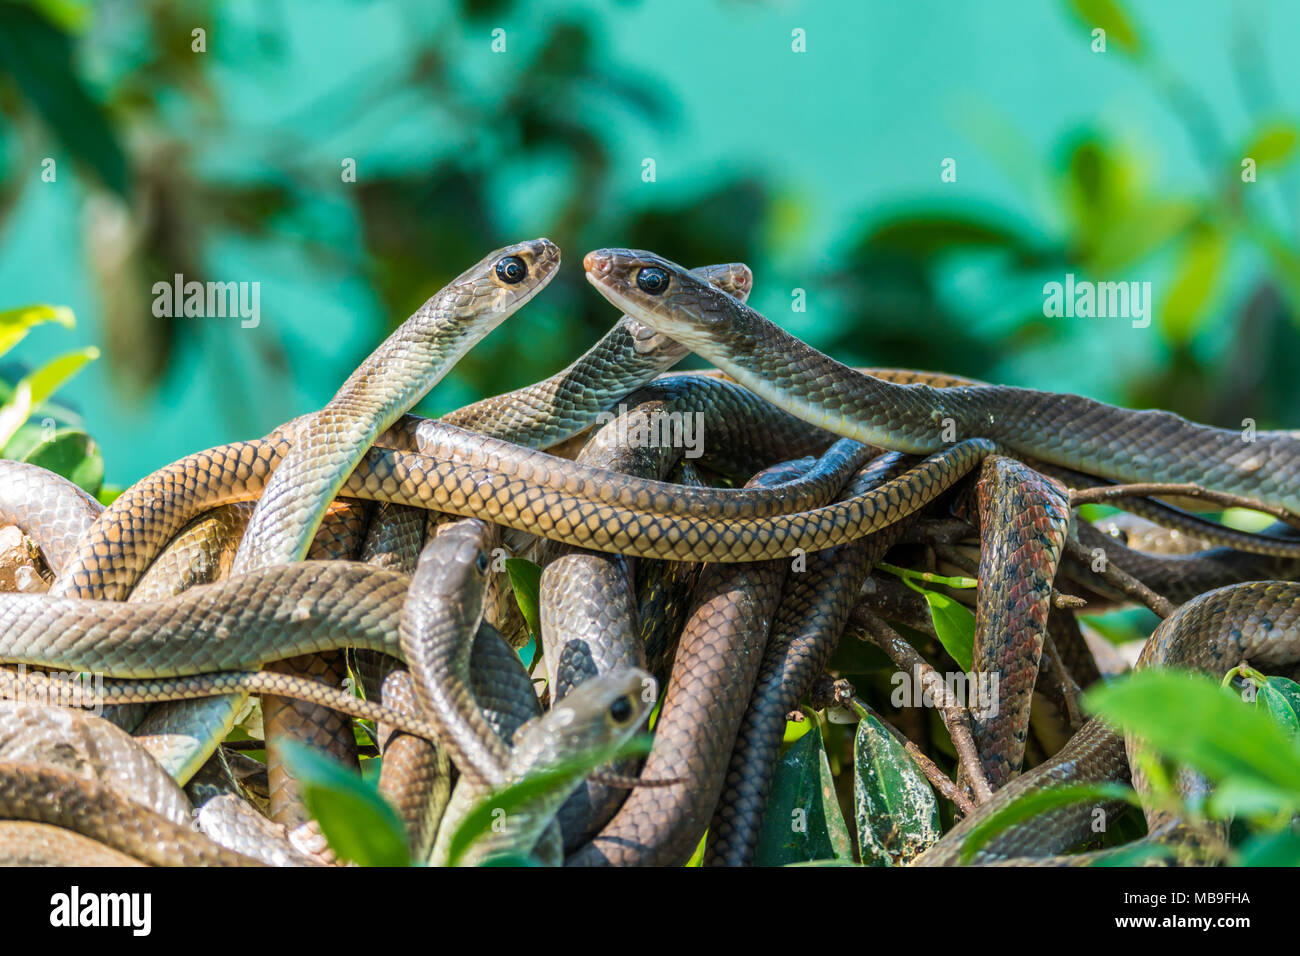 oriental rat snakes Stock Photo